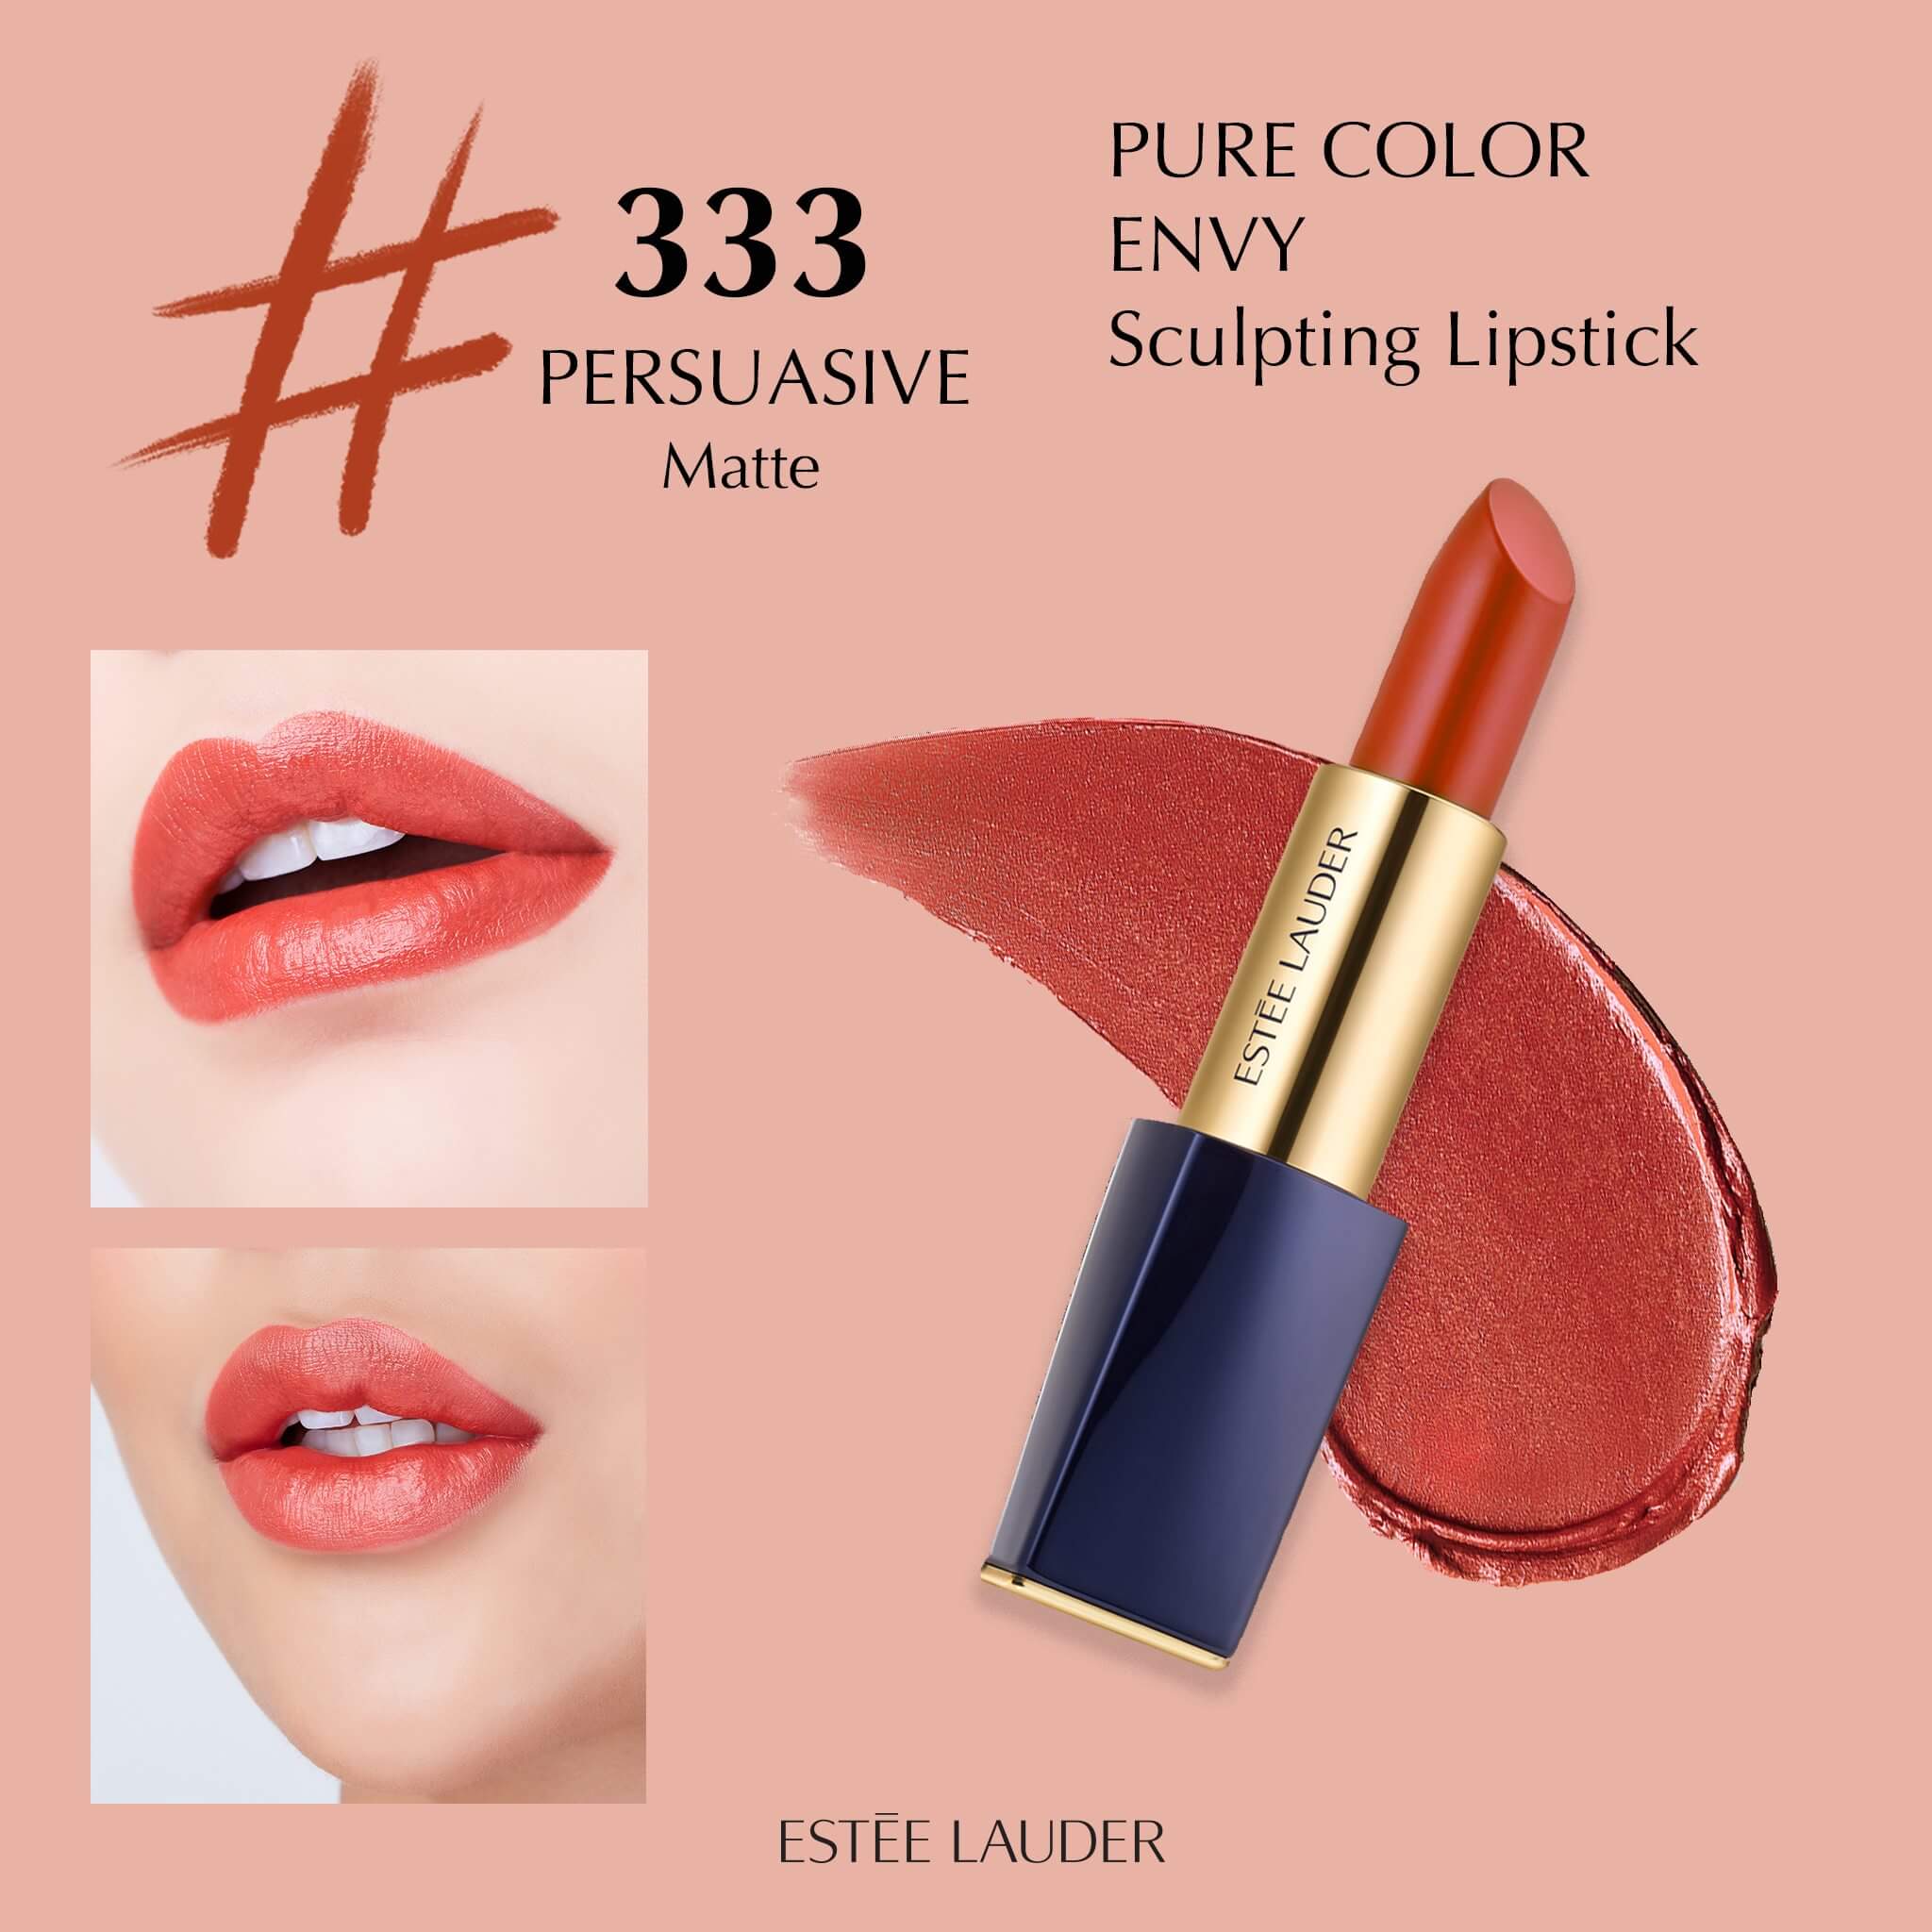 Estee Lauder Pure Color Envy Matte Sculpting Lipstick #333 Persuasive 2.8 g  เนื้อสัมผัสแบบ Metallic Matte นี่เป็นผลลัพธ์ที่ผสมผสานกันระหว่างผลลัพธ์ที่ดูนุ่มนวลของลิปสติกแบบเนื้อแมทท์และการเปล่งประกายที่ได้จากเนื้อมุกของลิปสติกนี้ สร้างมิติให้กับริมฝีปากได้หลากหลาย ช่วยให้รูปทรงของริมฝีปากดูอวบอิ่มขึ้น ริมฝีปากมีรูปทรงชัดเจนและดูโดดเด่นขึ้น